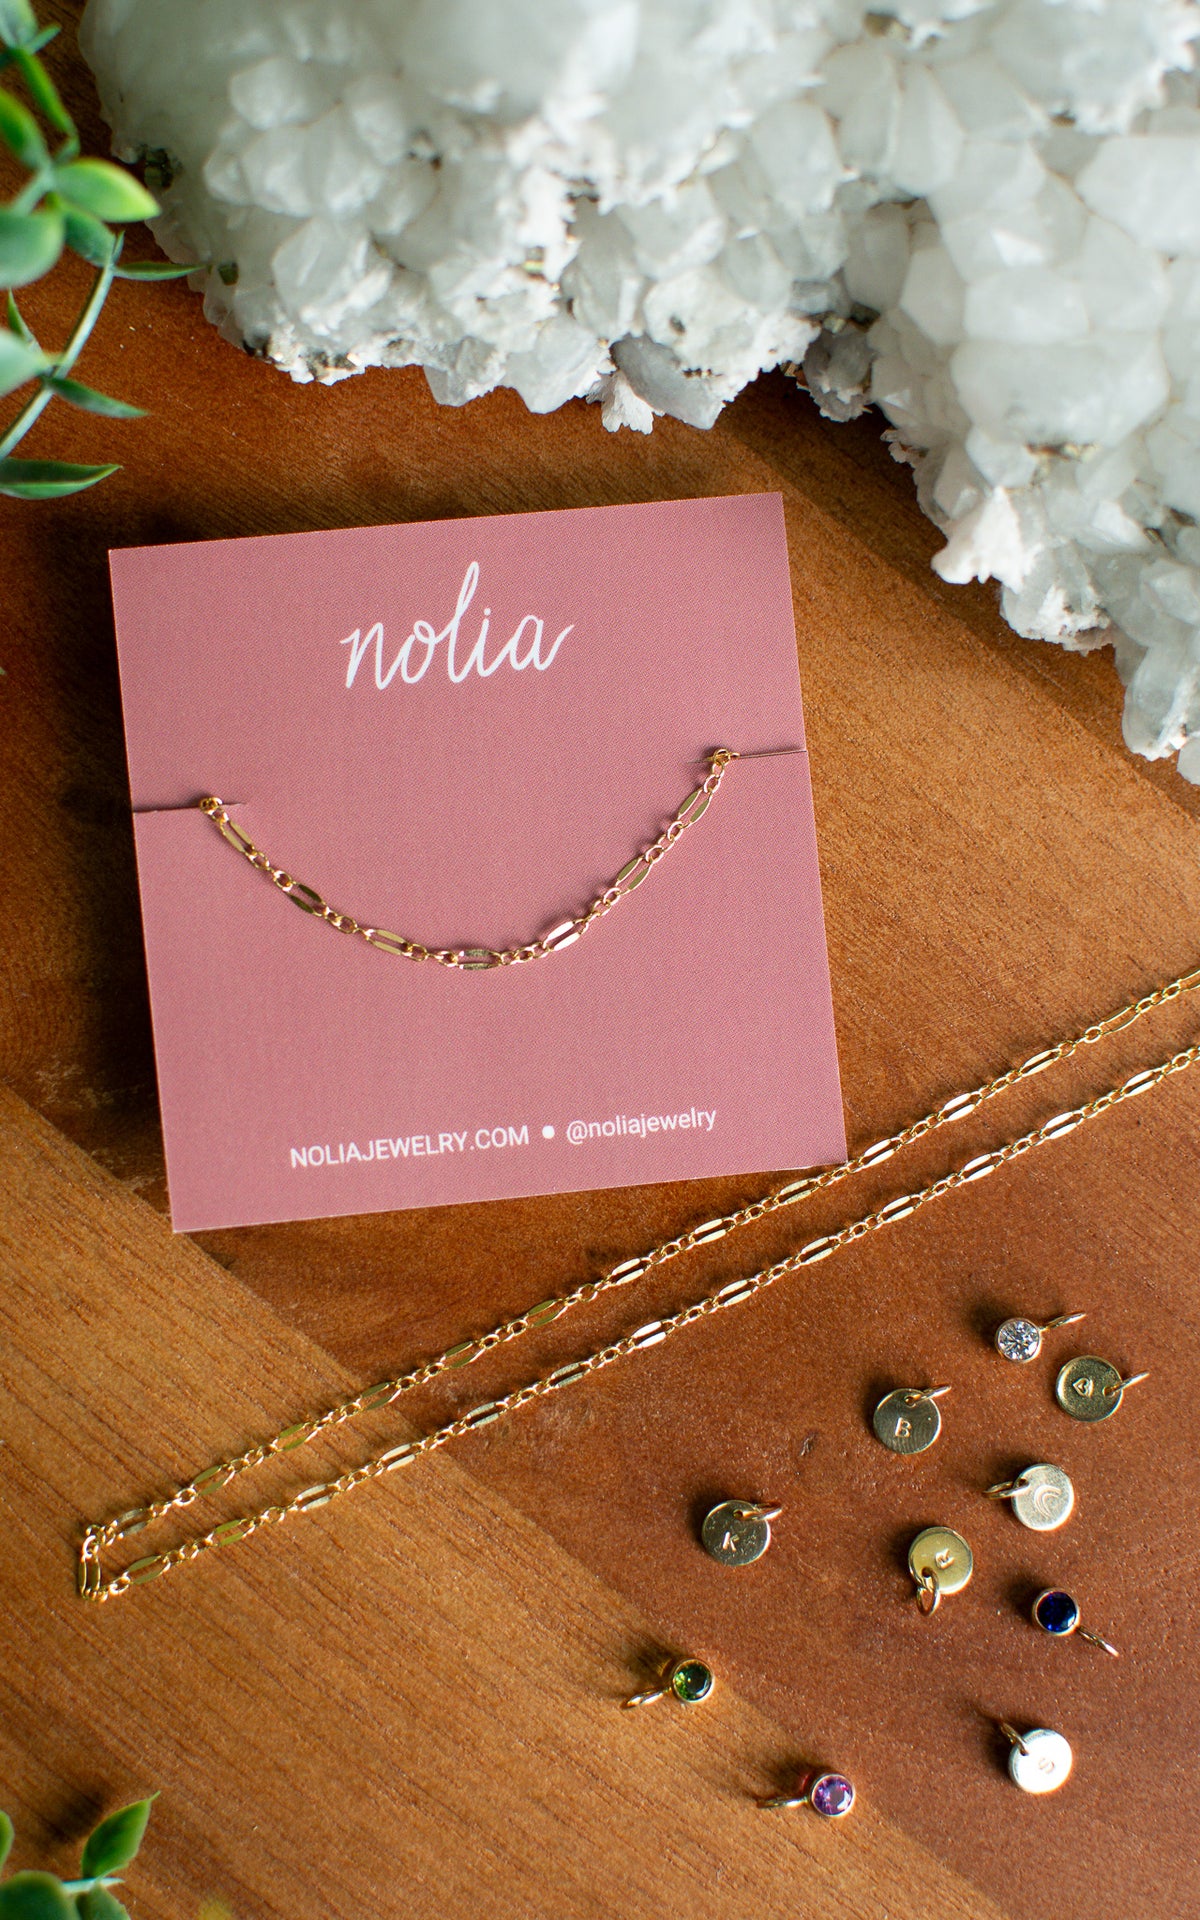 Nolia Gold Chain Necklace